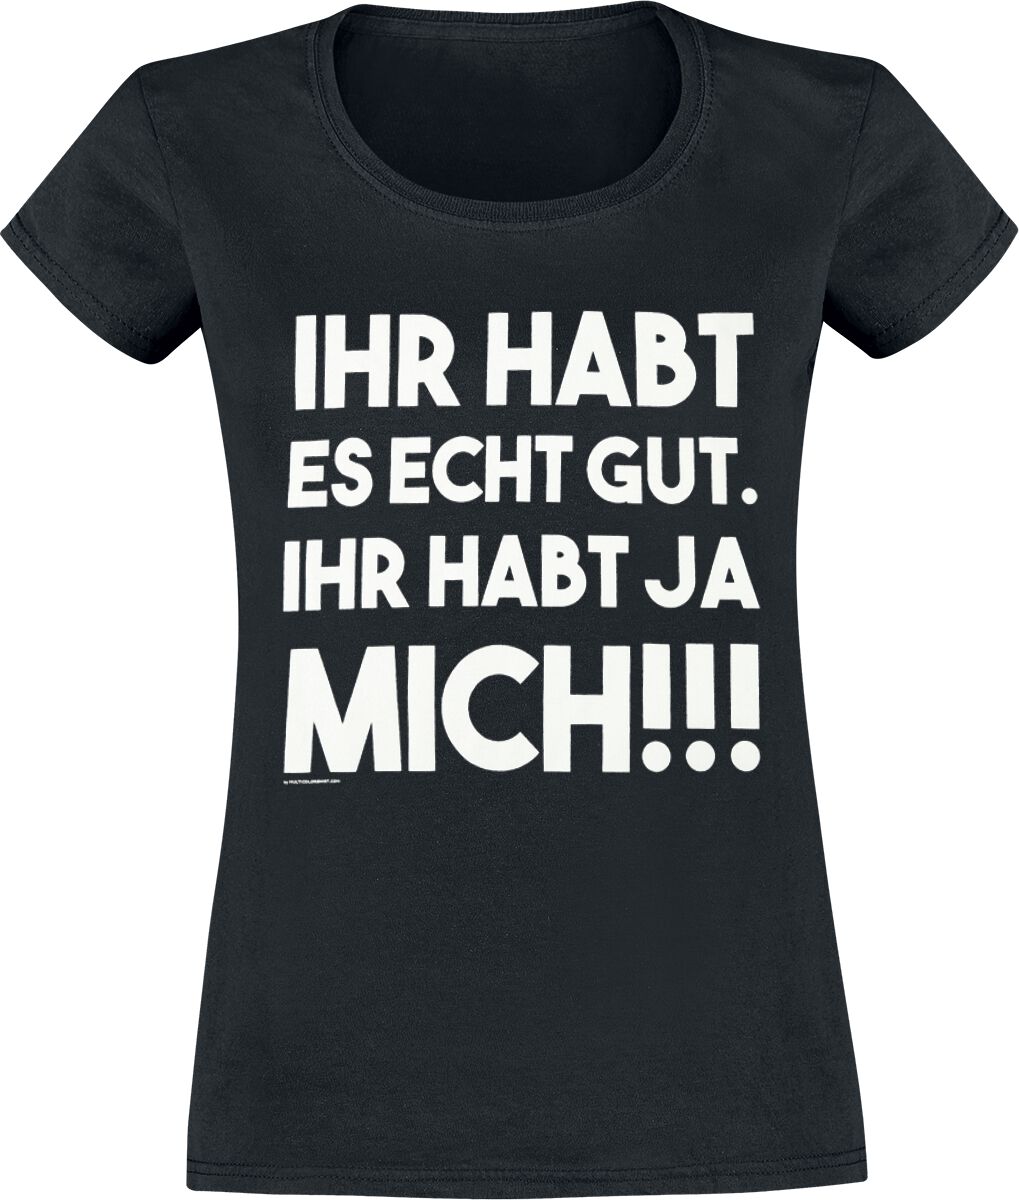 Sprüche T-Shirt - Ihr habt es echt gut - S bis XXL - für Damen - Größe XL - schwarz